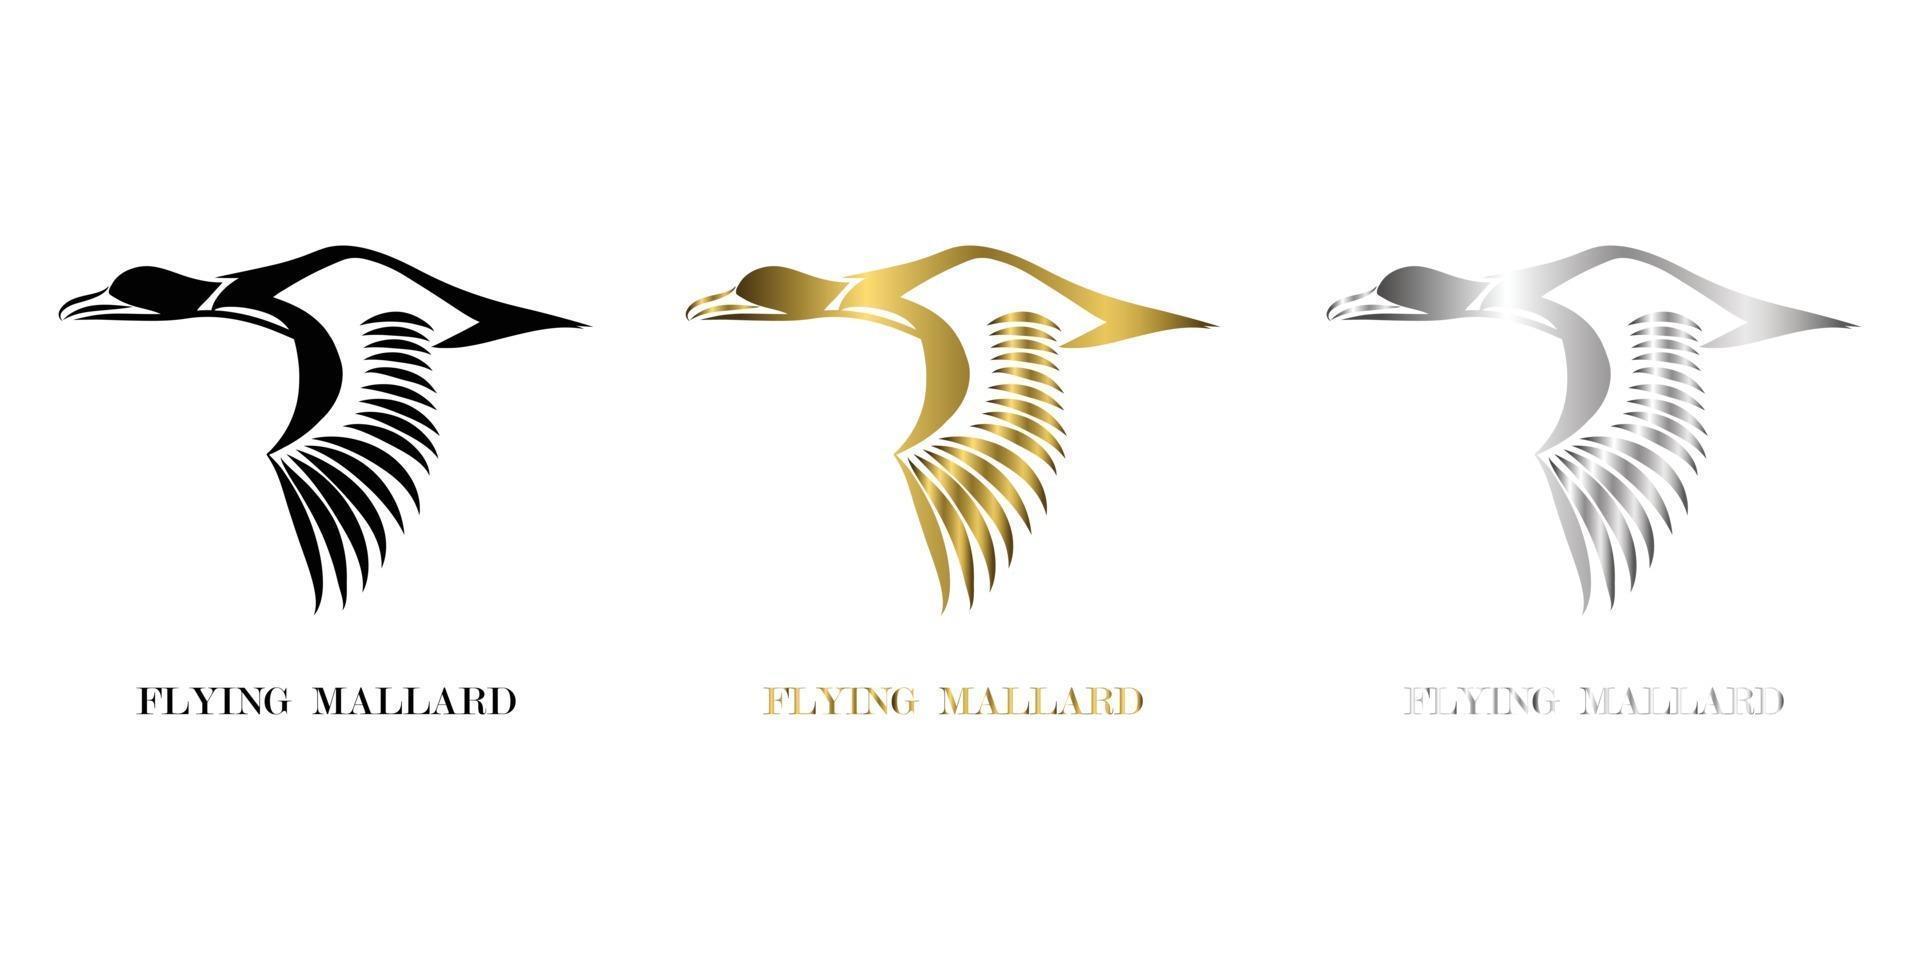 logo vectoriel ligne art de canard colvert qui vole trois couleurs noir or argent